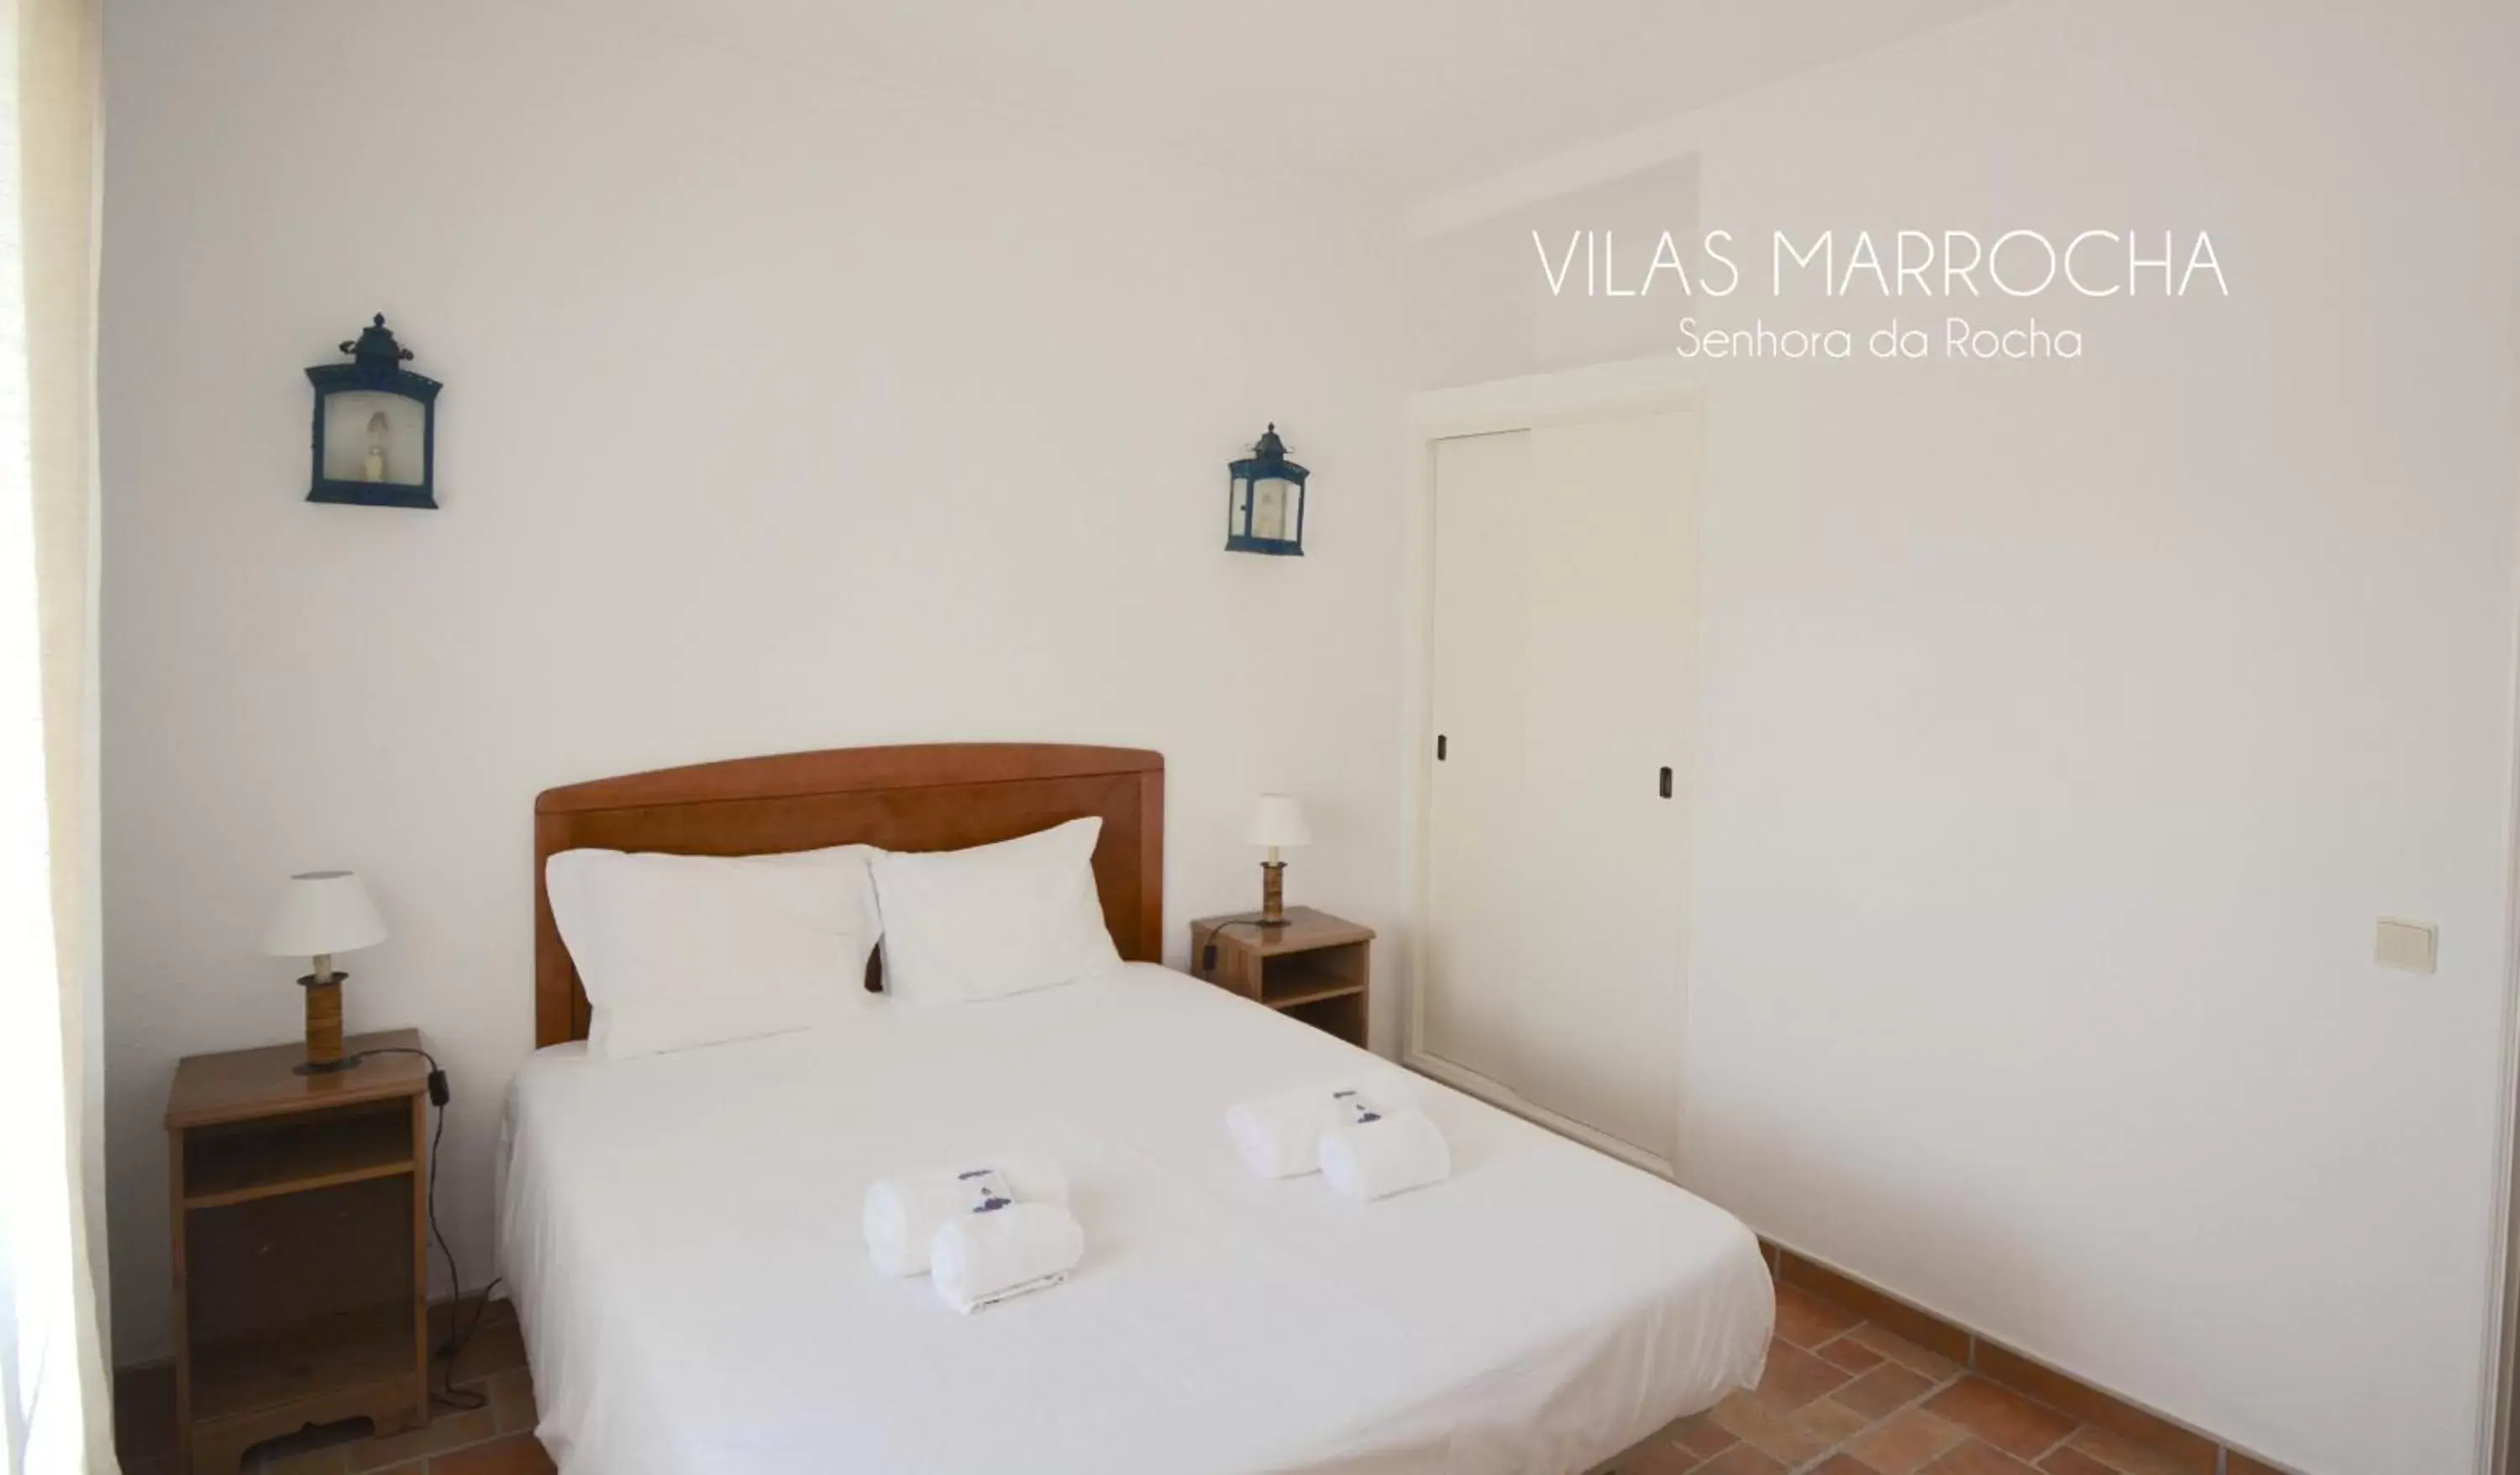 Bed in Vilas Marrocha